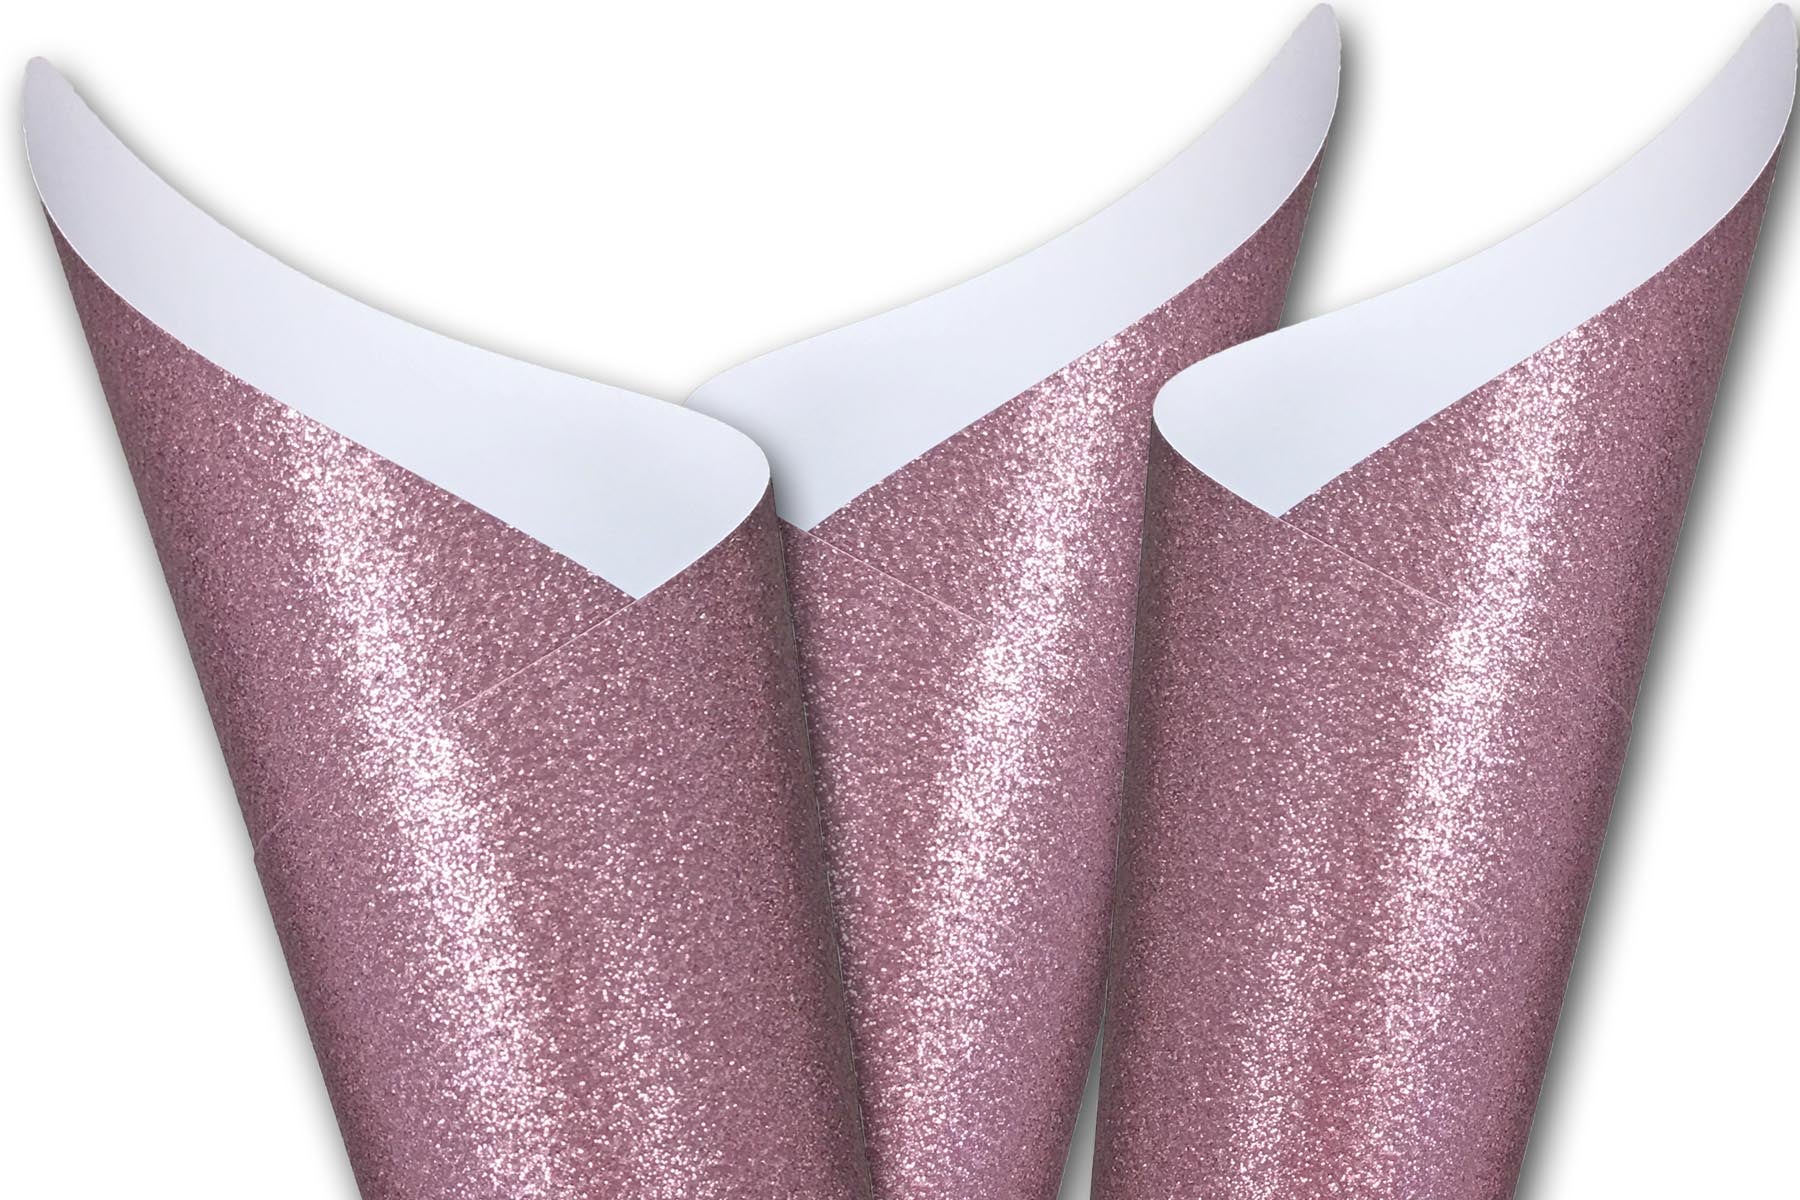 Glitter Cardstock Rose 12 x 12 81# Cover Sheets Bulk Pack of 15